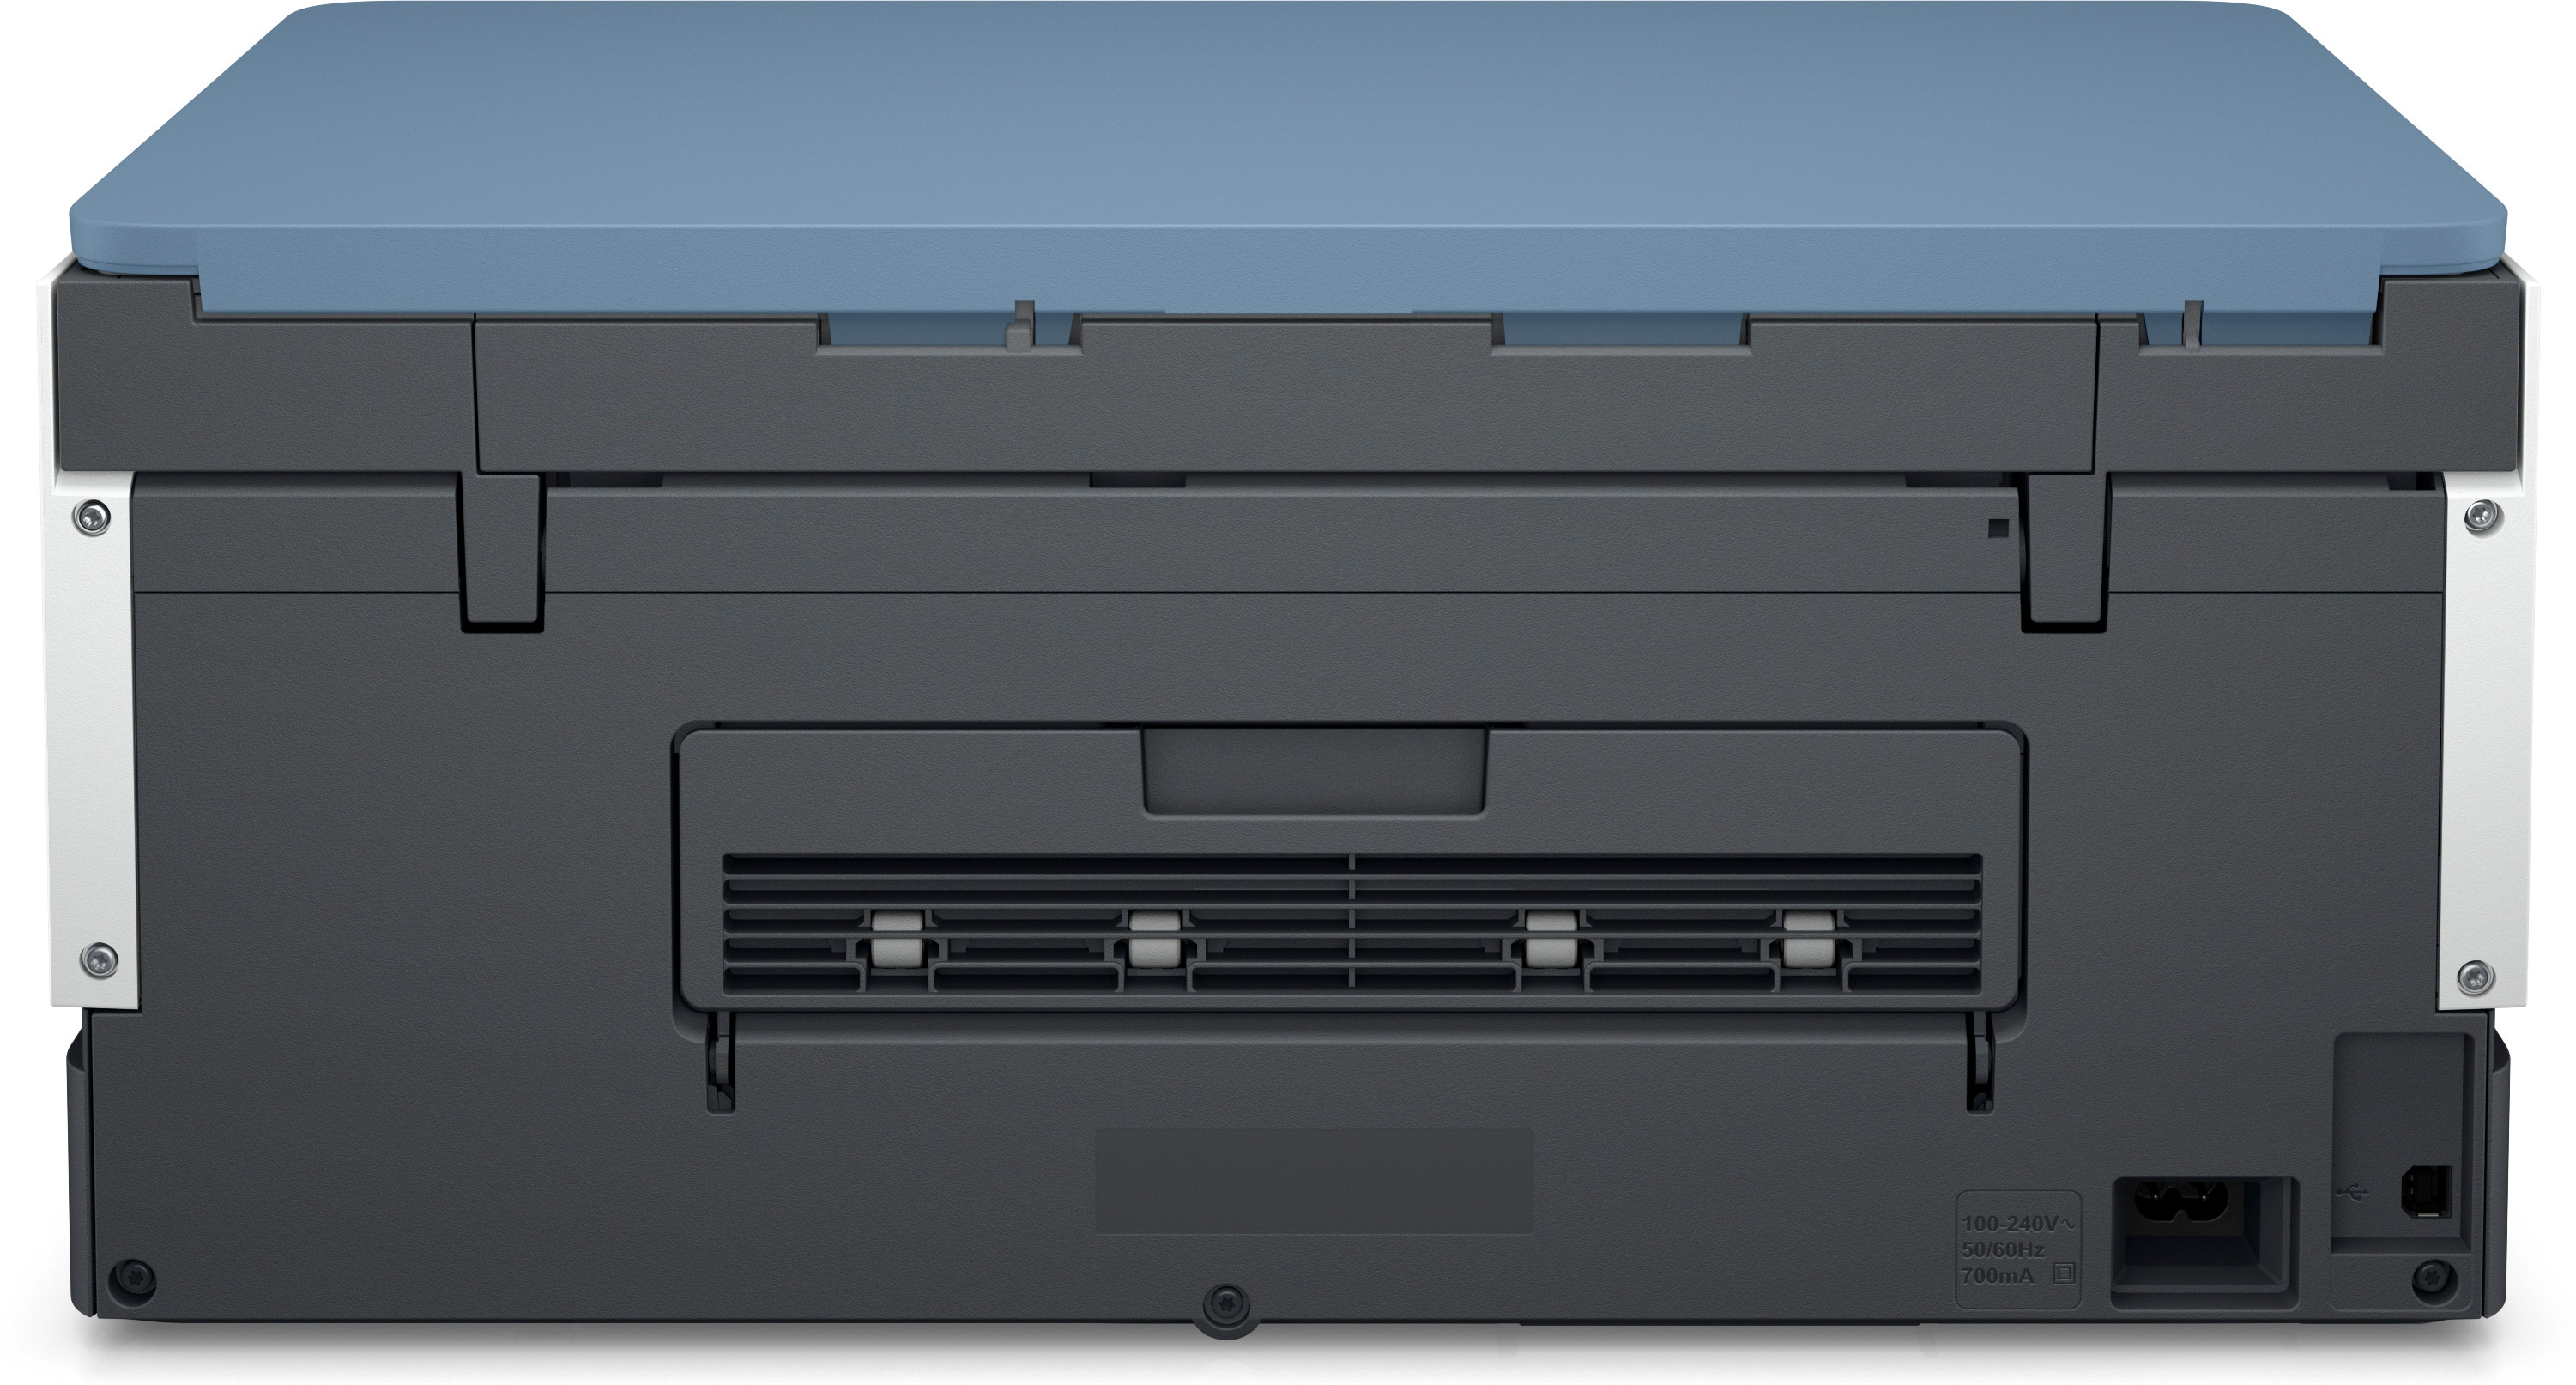 675 Inkjet WLAN Tank Multifunktionsdrucker Smart HP